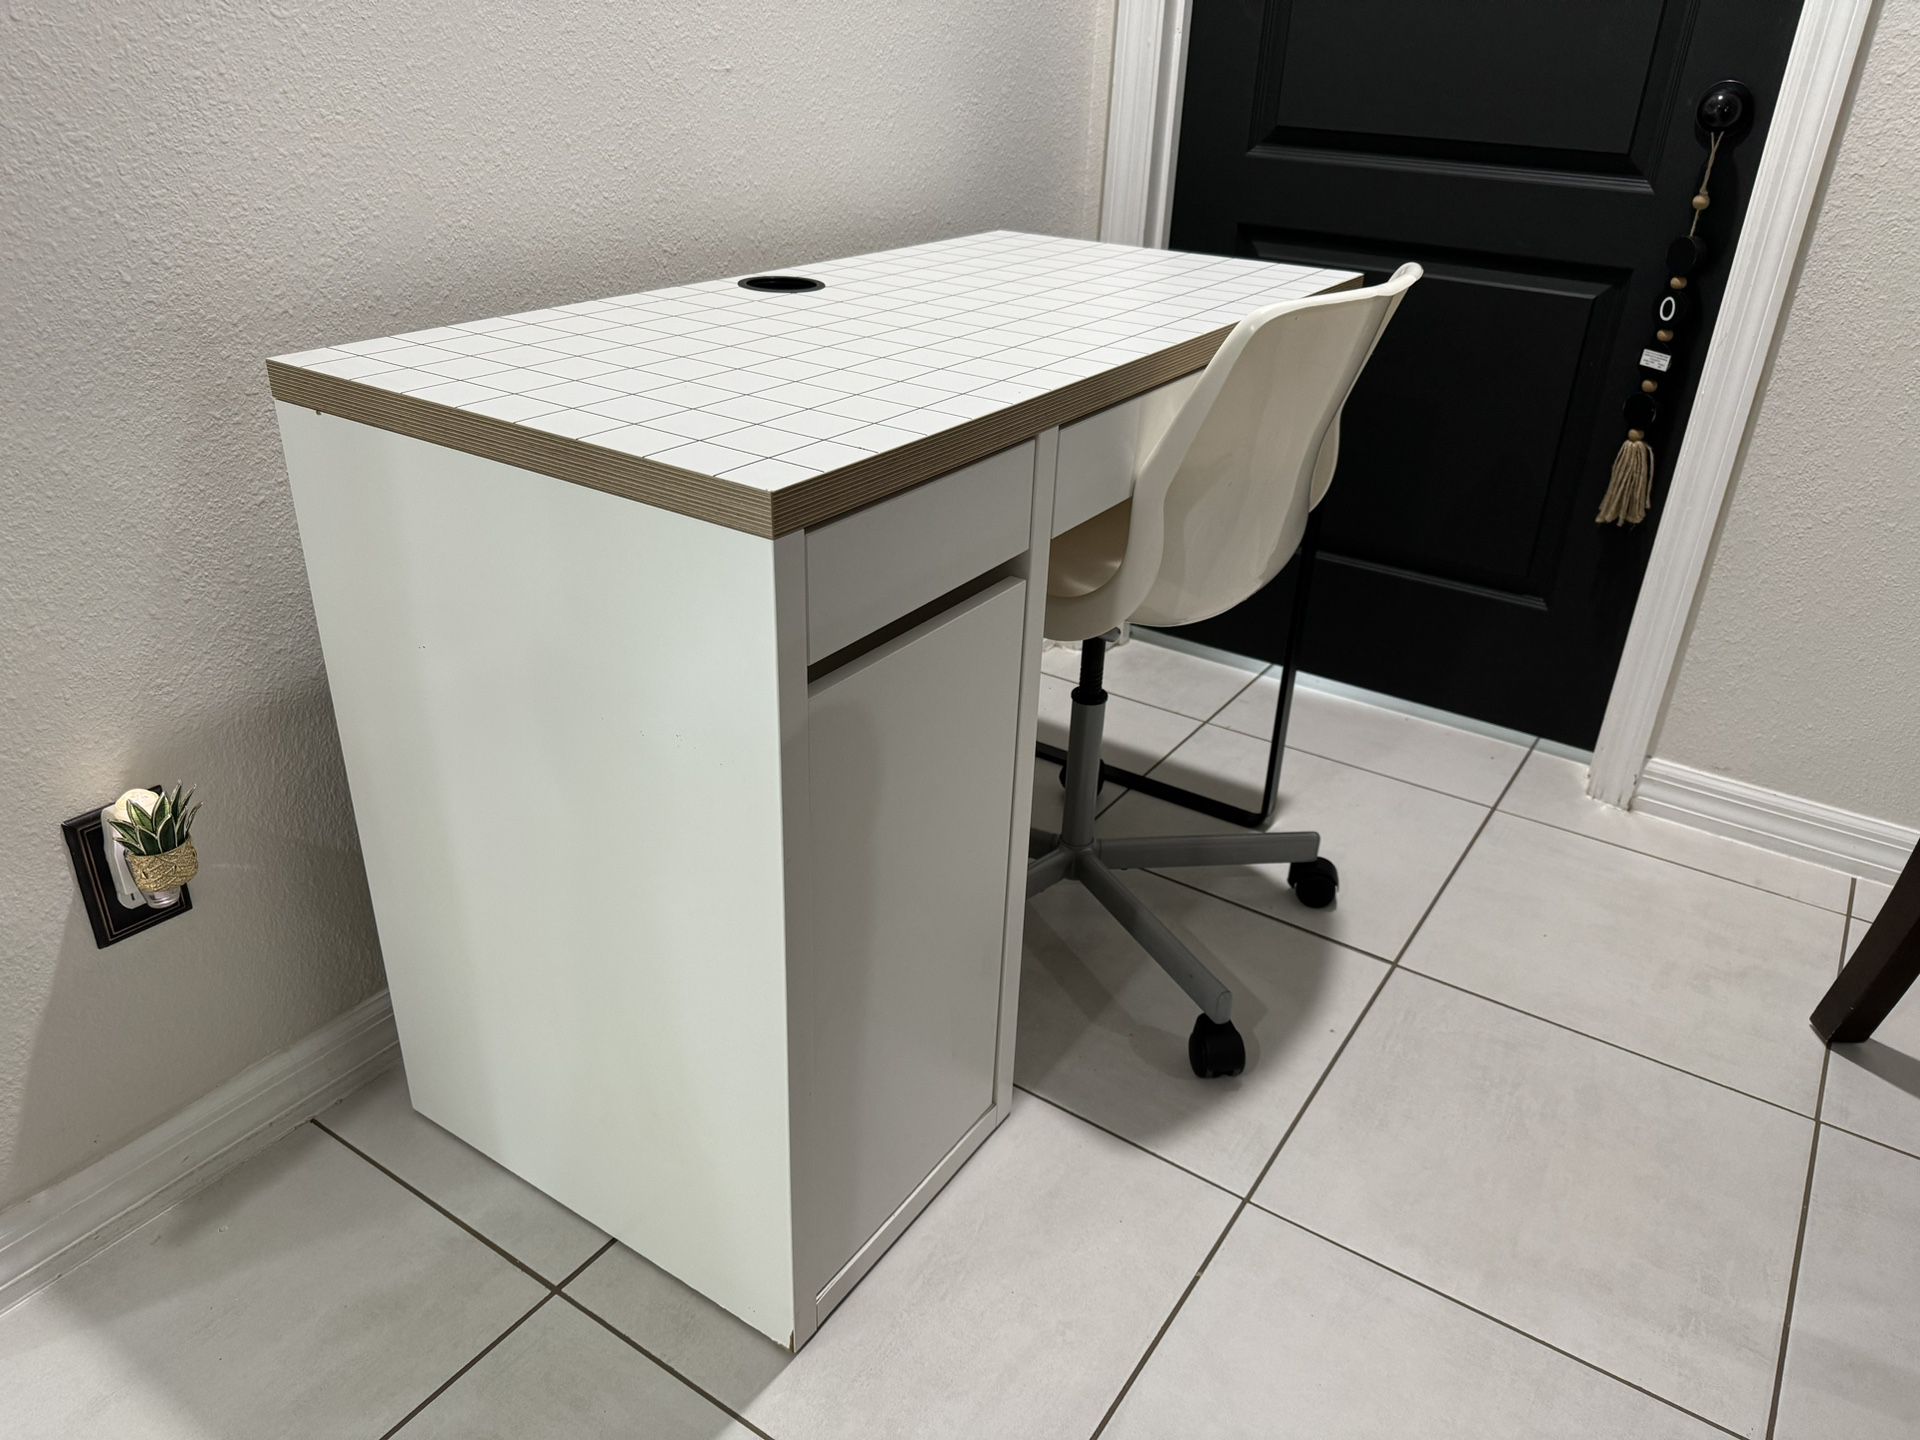 White Desk & Chair $40